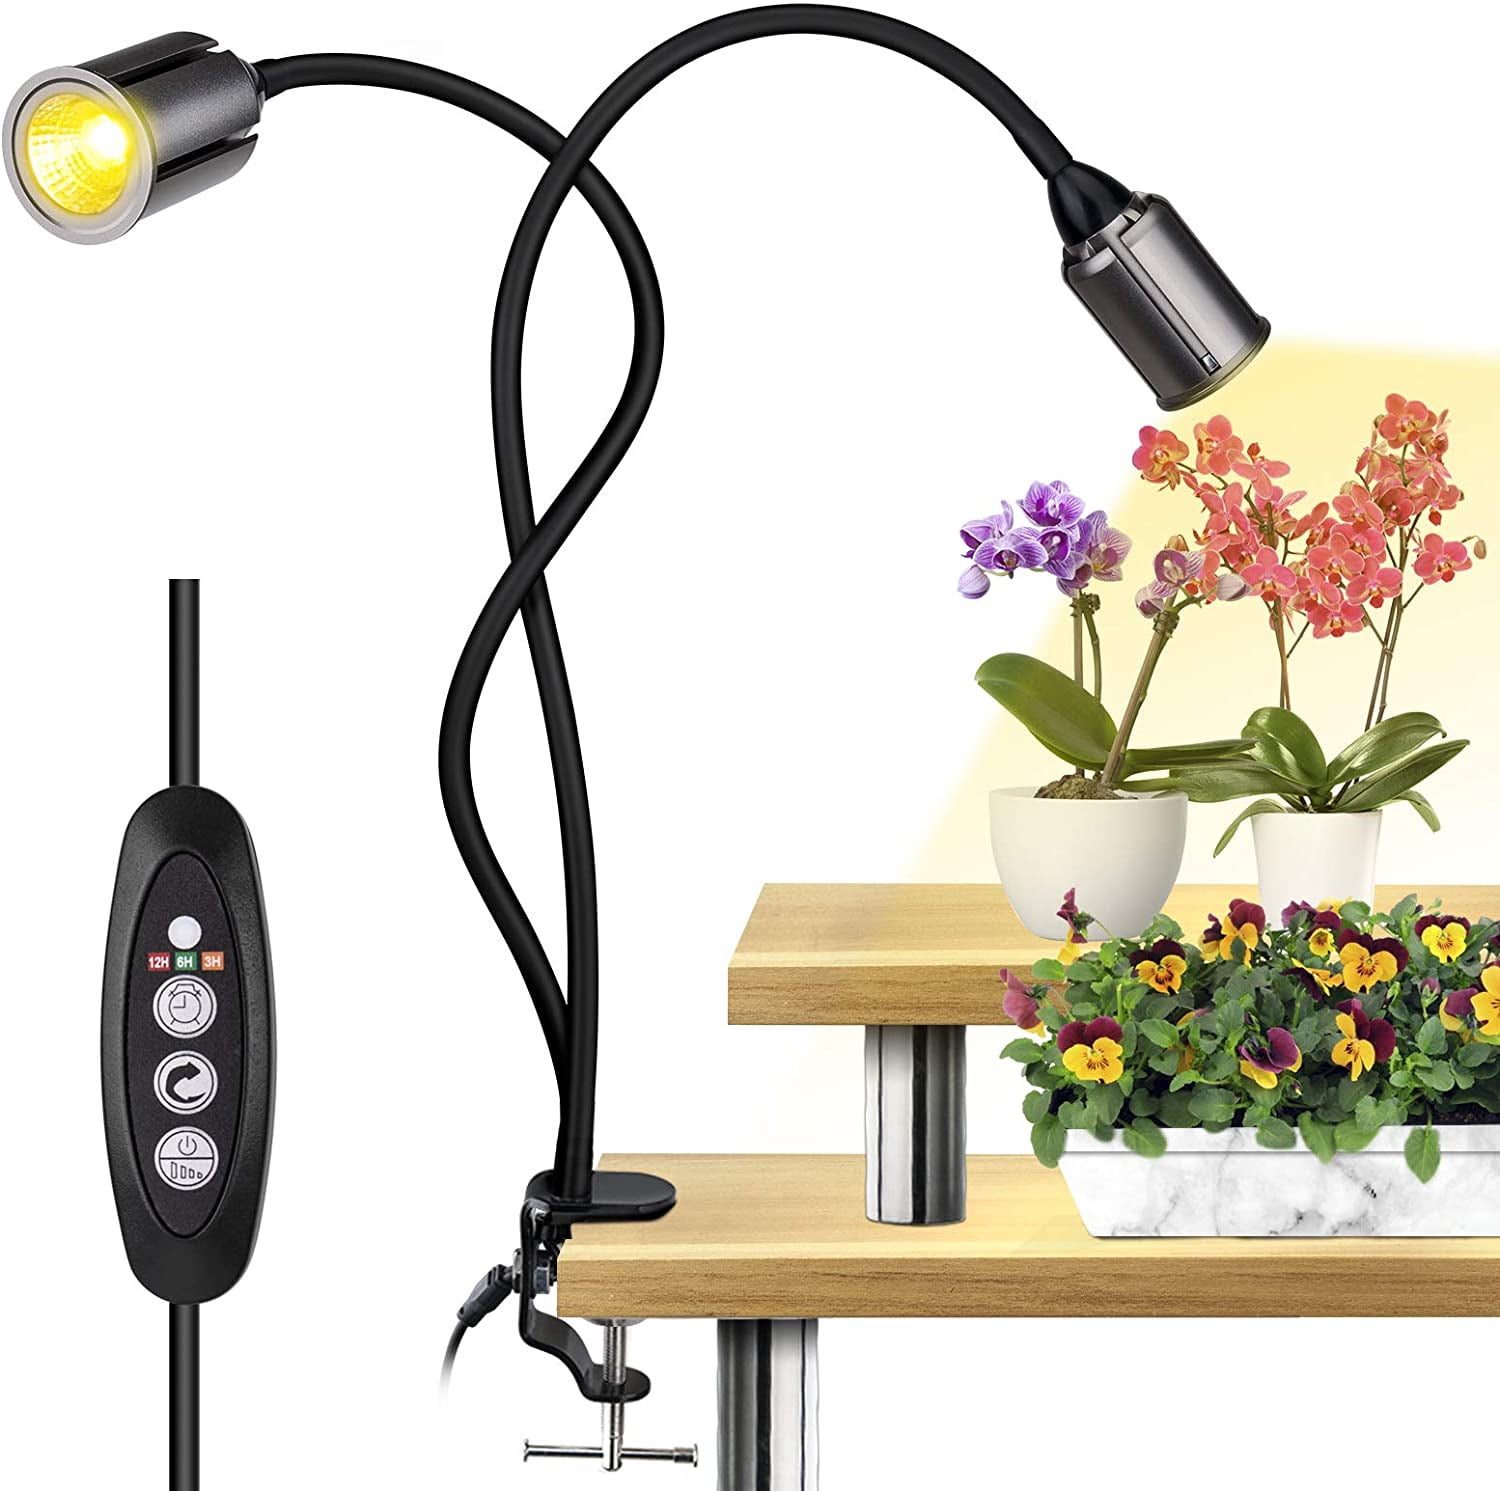 4× 3W-1000W Reflector LED Grow Light Lamp Full Spectrum Veg Flower Pflanzenlampe 